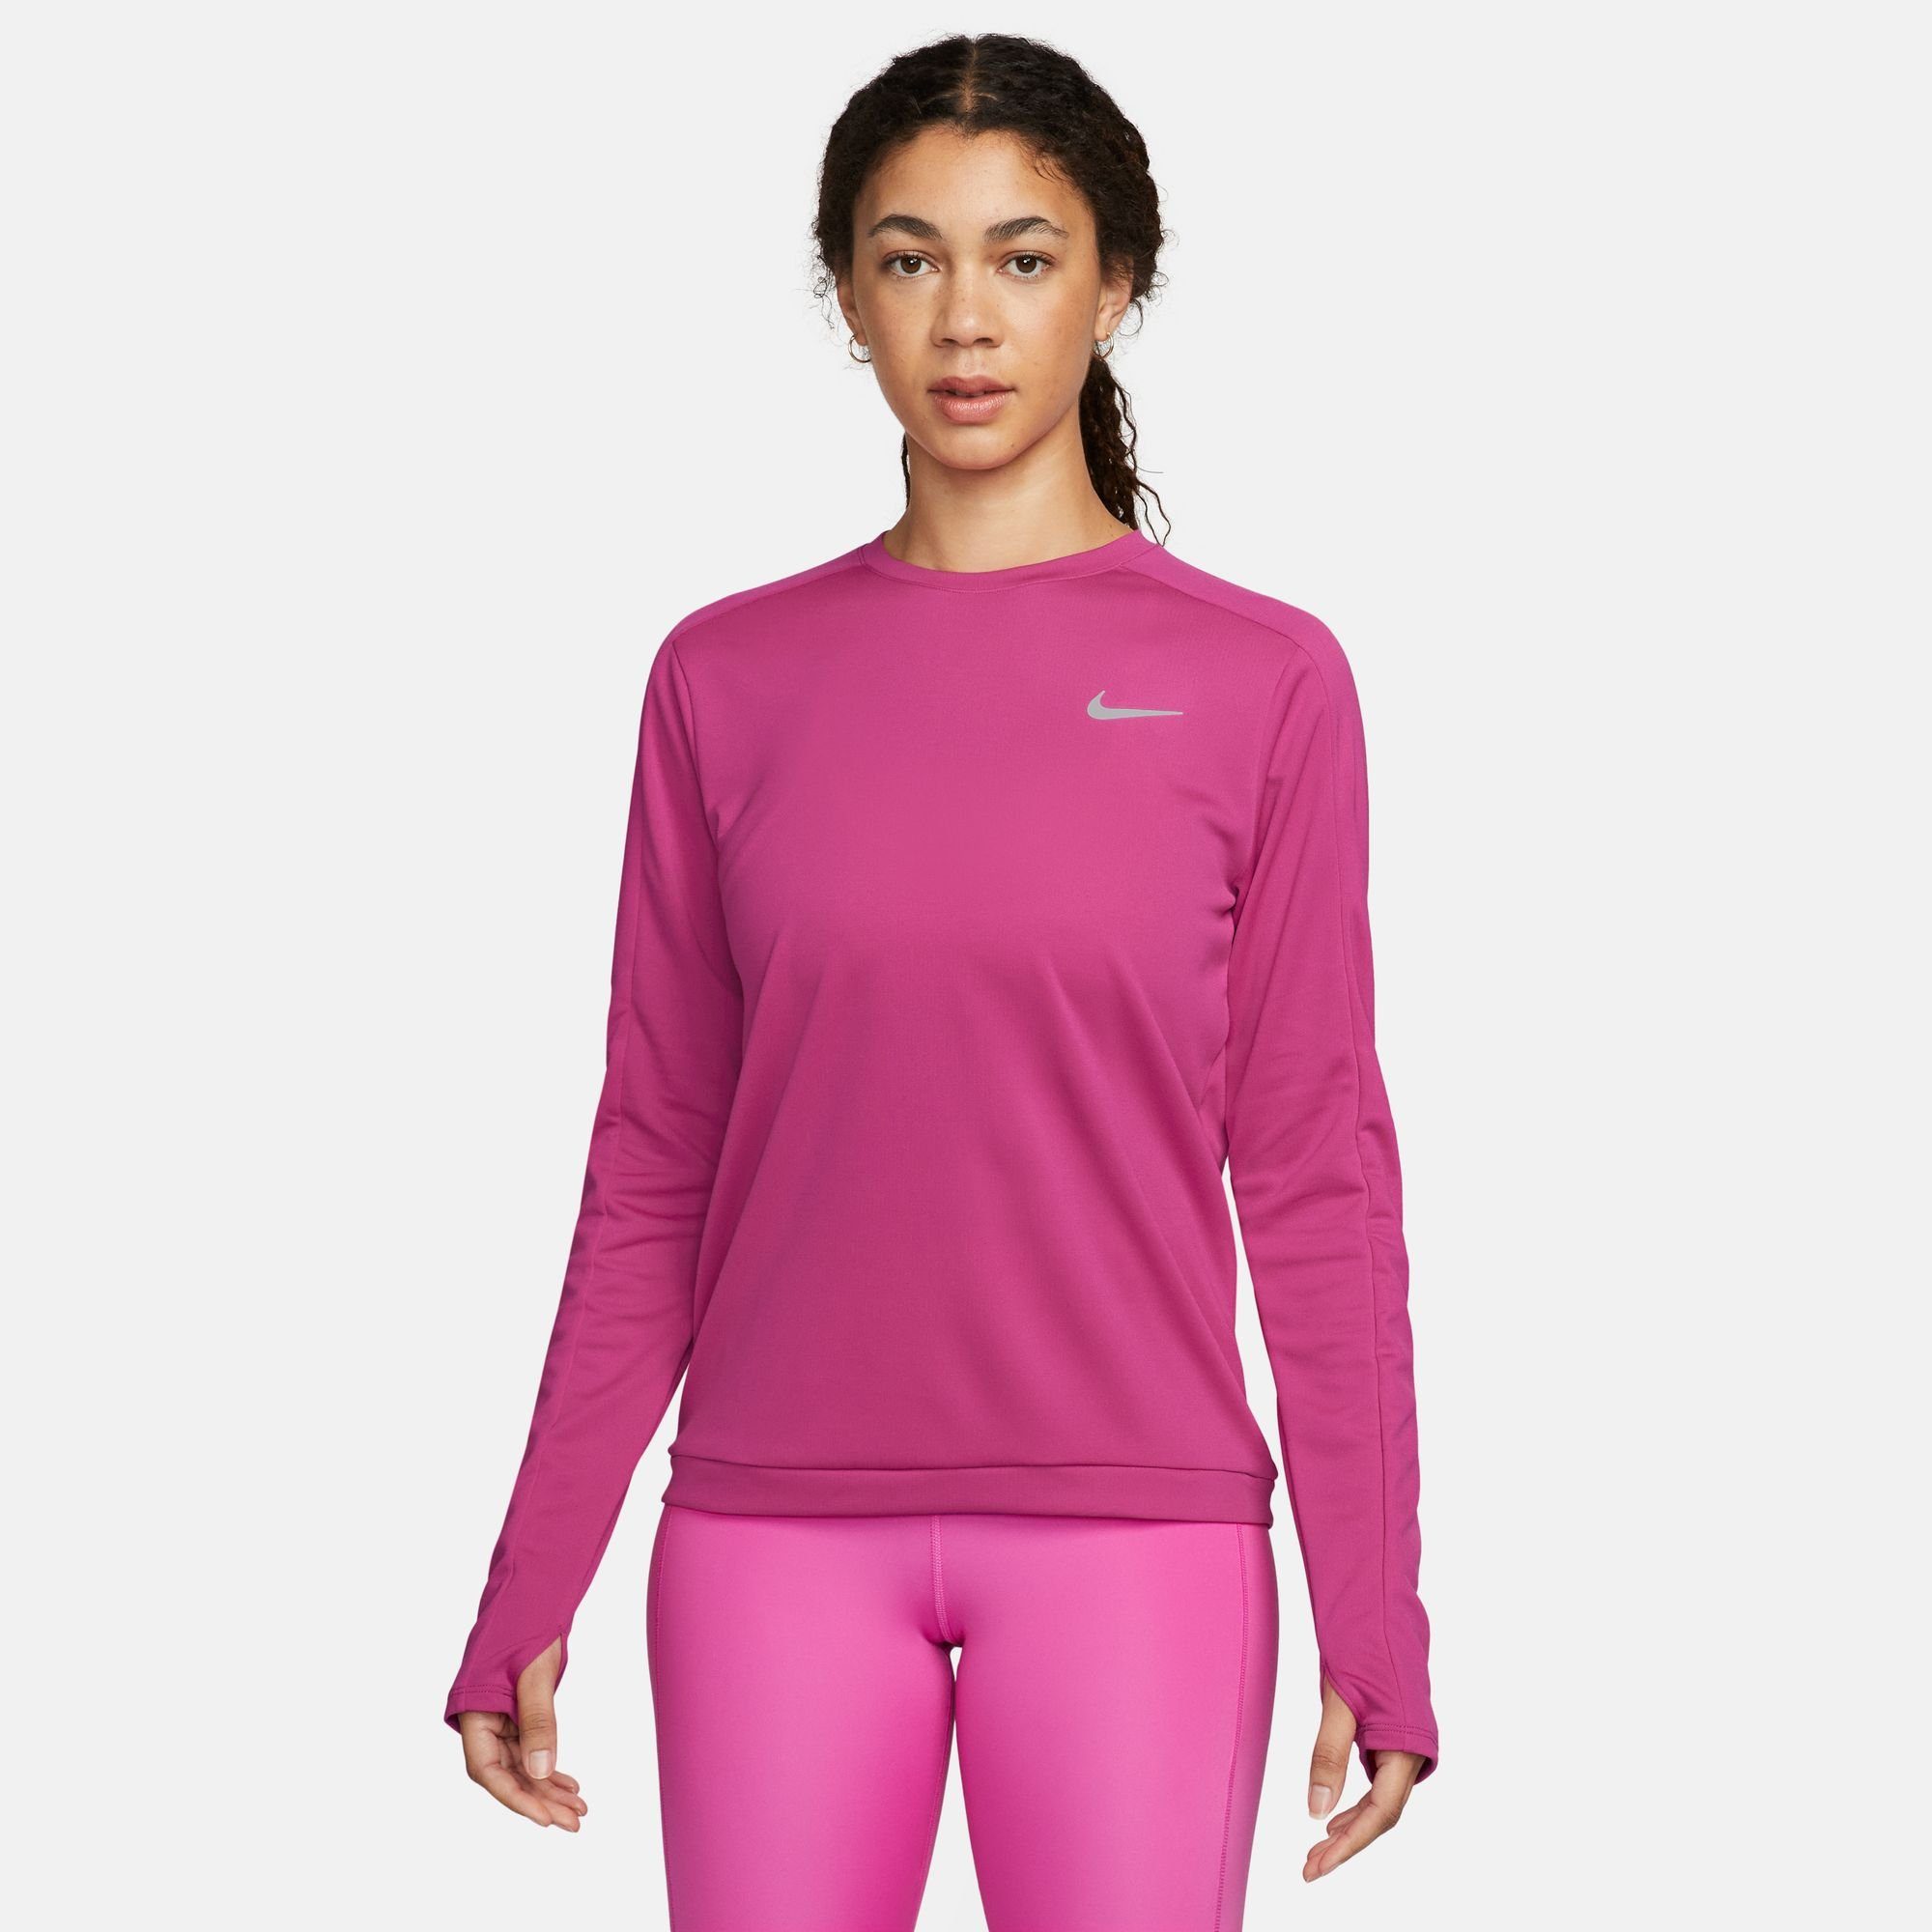 Höchste Vorzugsbehandlung! Nike Laufshirt TOP WOMEN'S DRI-FIT SILV CREW-NECK RUNNING FIREBERRY/REFLECTIVE